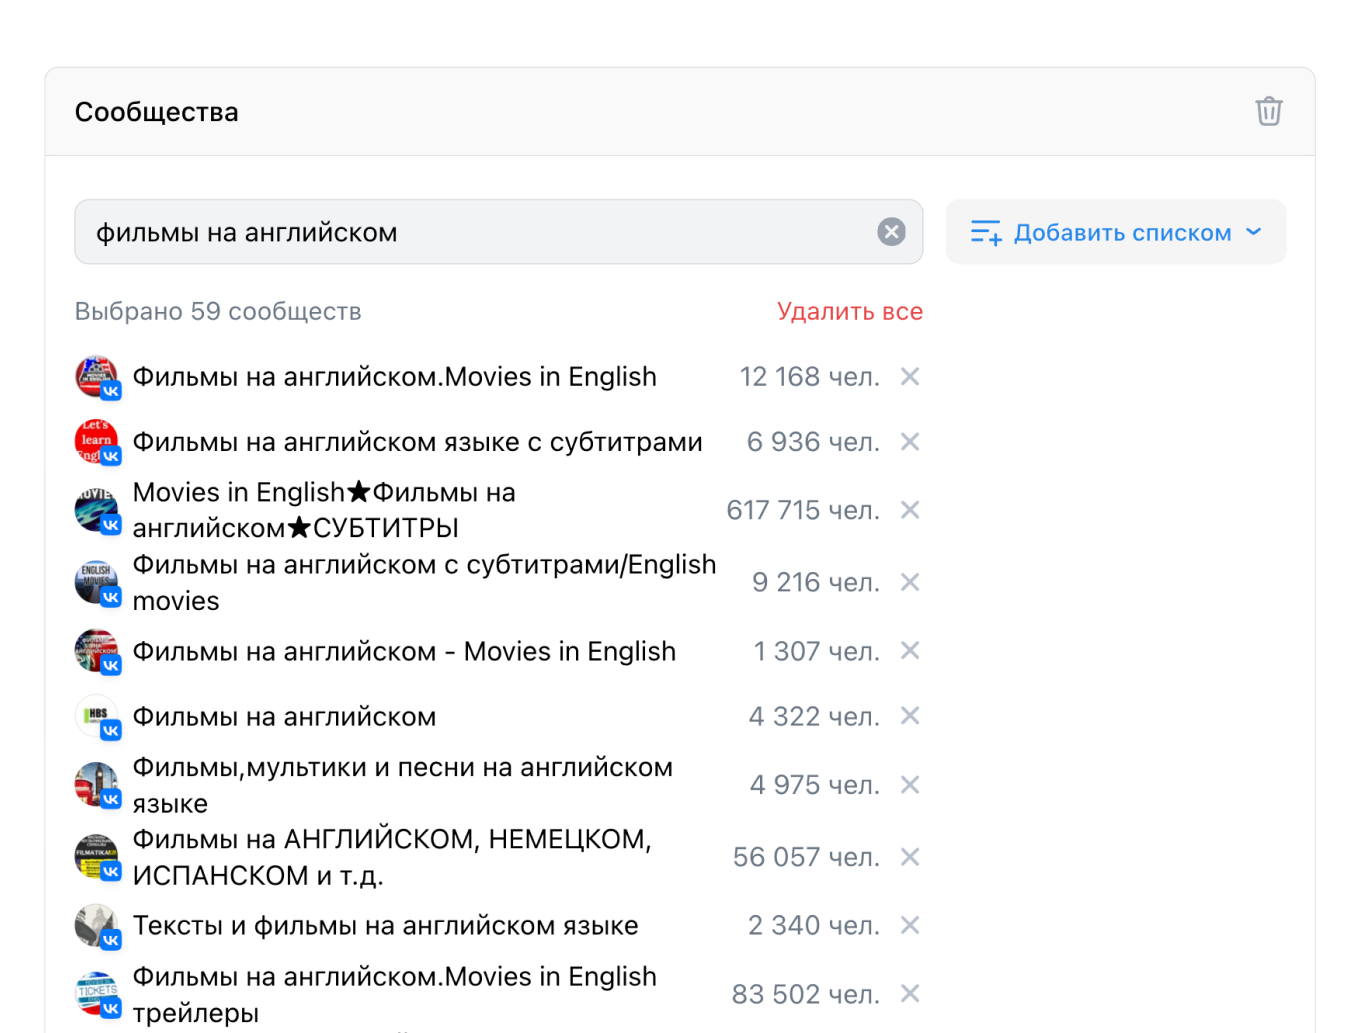 Пример блока настройки рекламы на подписчиков определенных сообществ во ВКонтакте